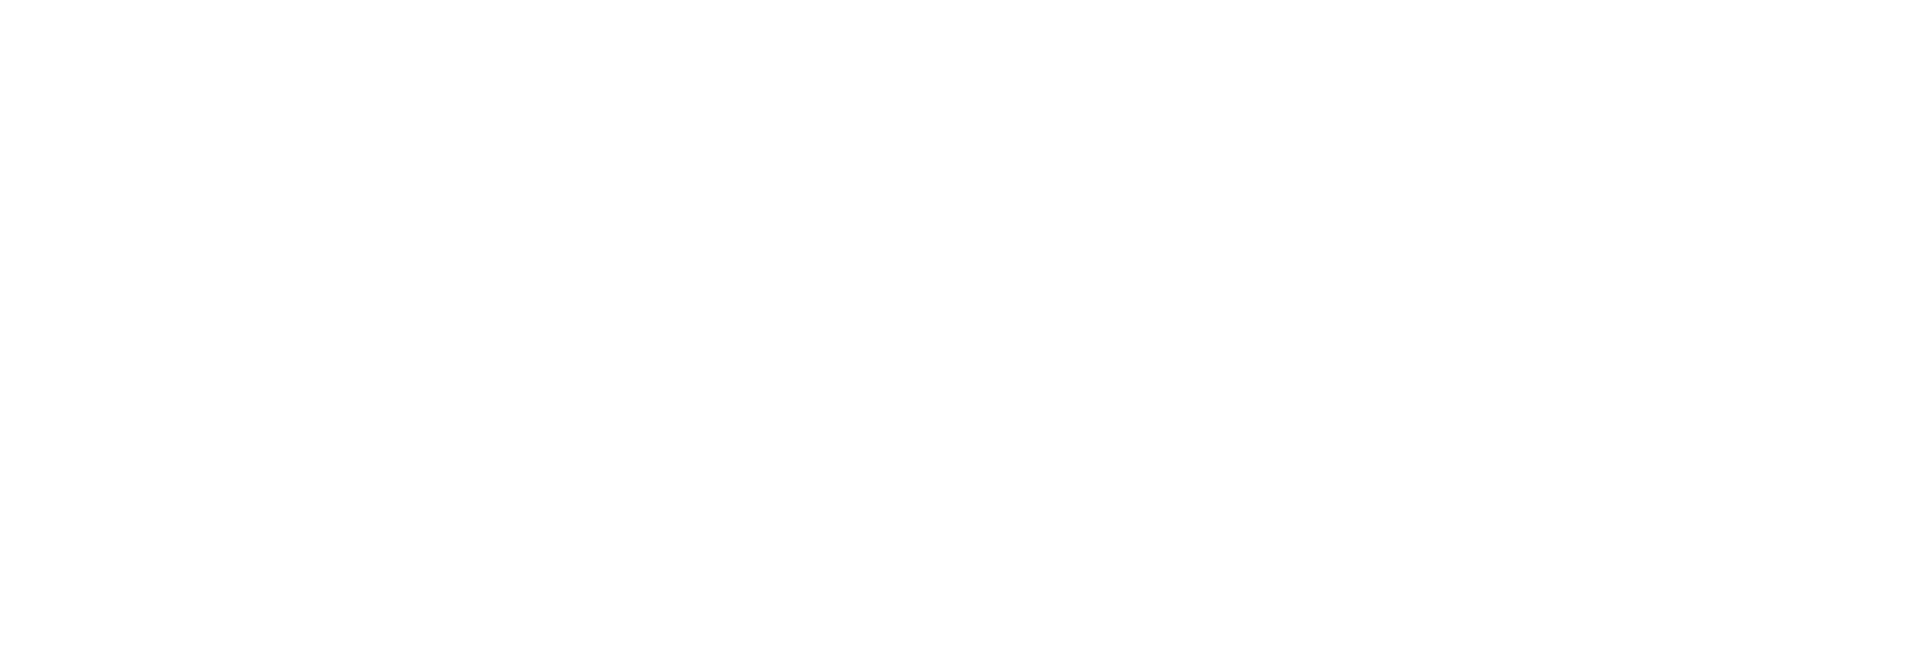 Spielen Sie Oros Gaming Spiele auf Starcasino.be